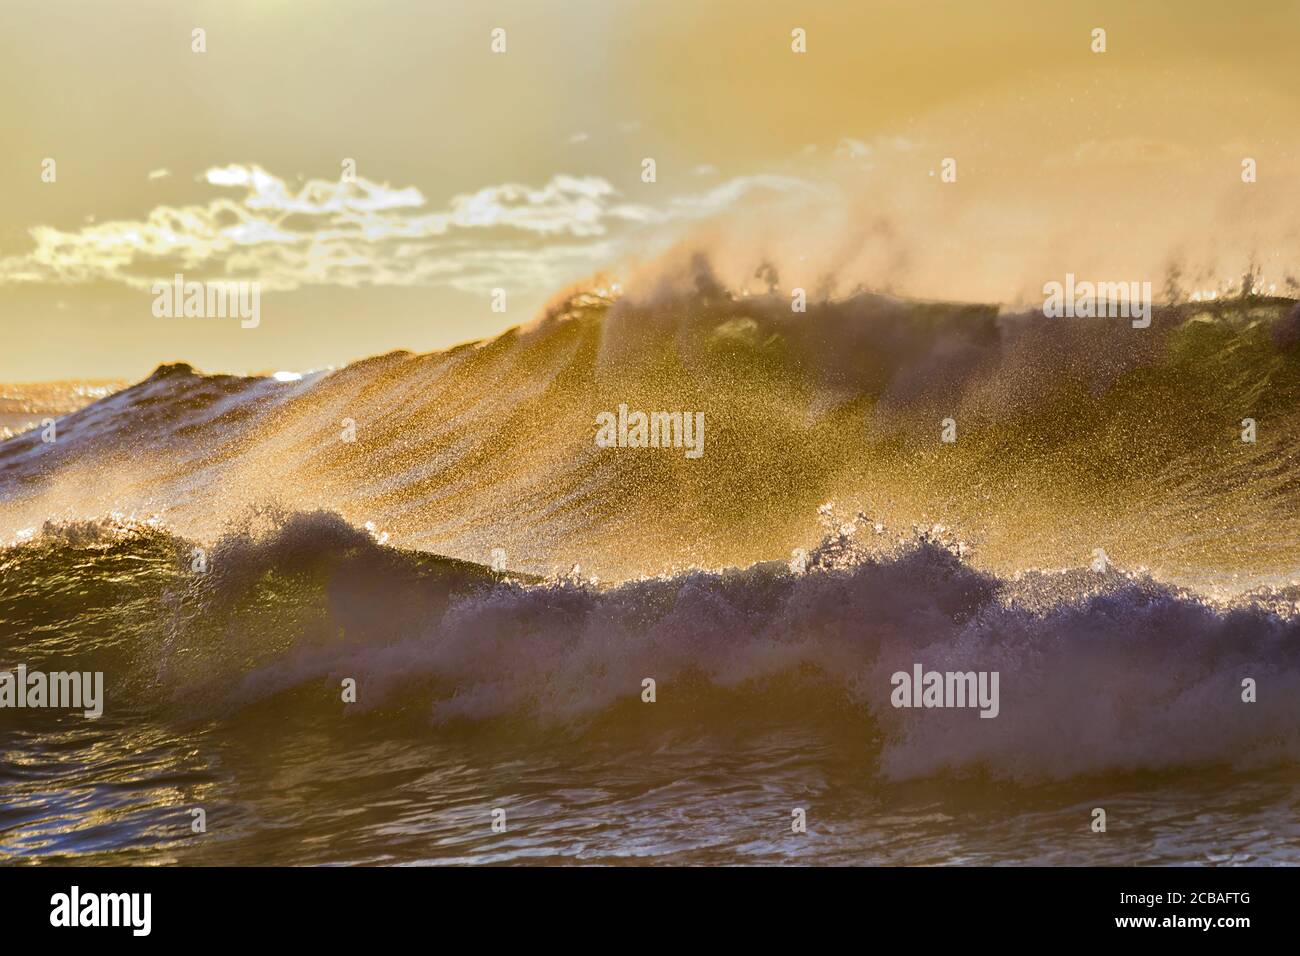 Ondate a onda rotolando sulla spiaggia sabbiosa di Bronte dei sobborghi orientali di Sydney, a rigonzate di tempesta in una luce soffusa del sole del mattino. Foto Stock